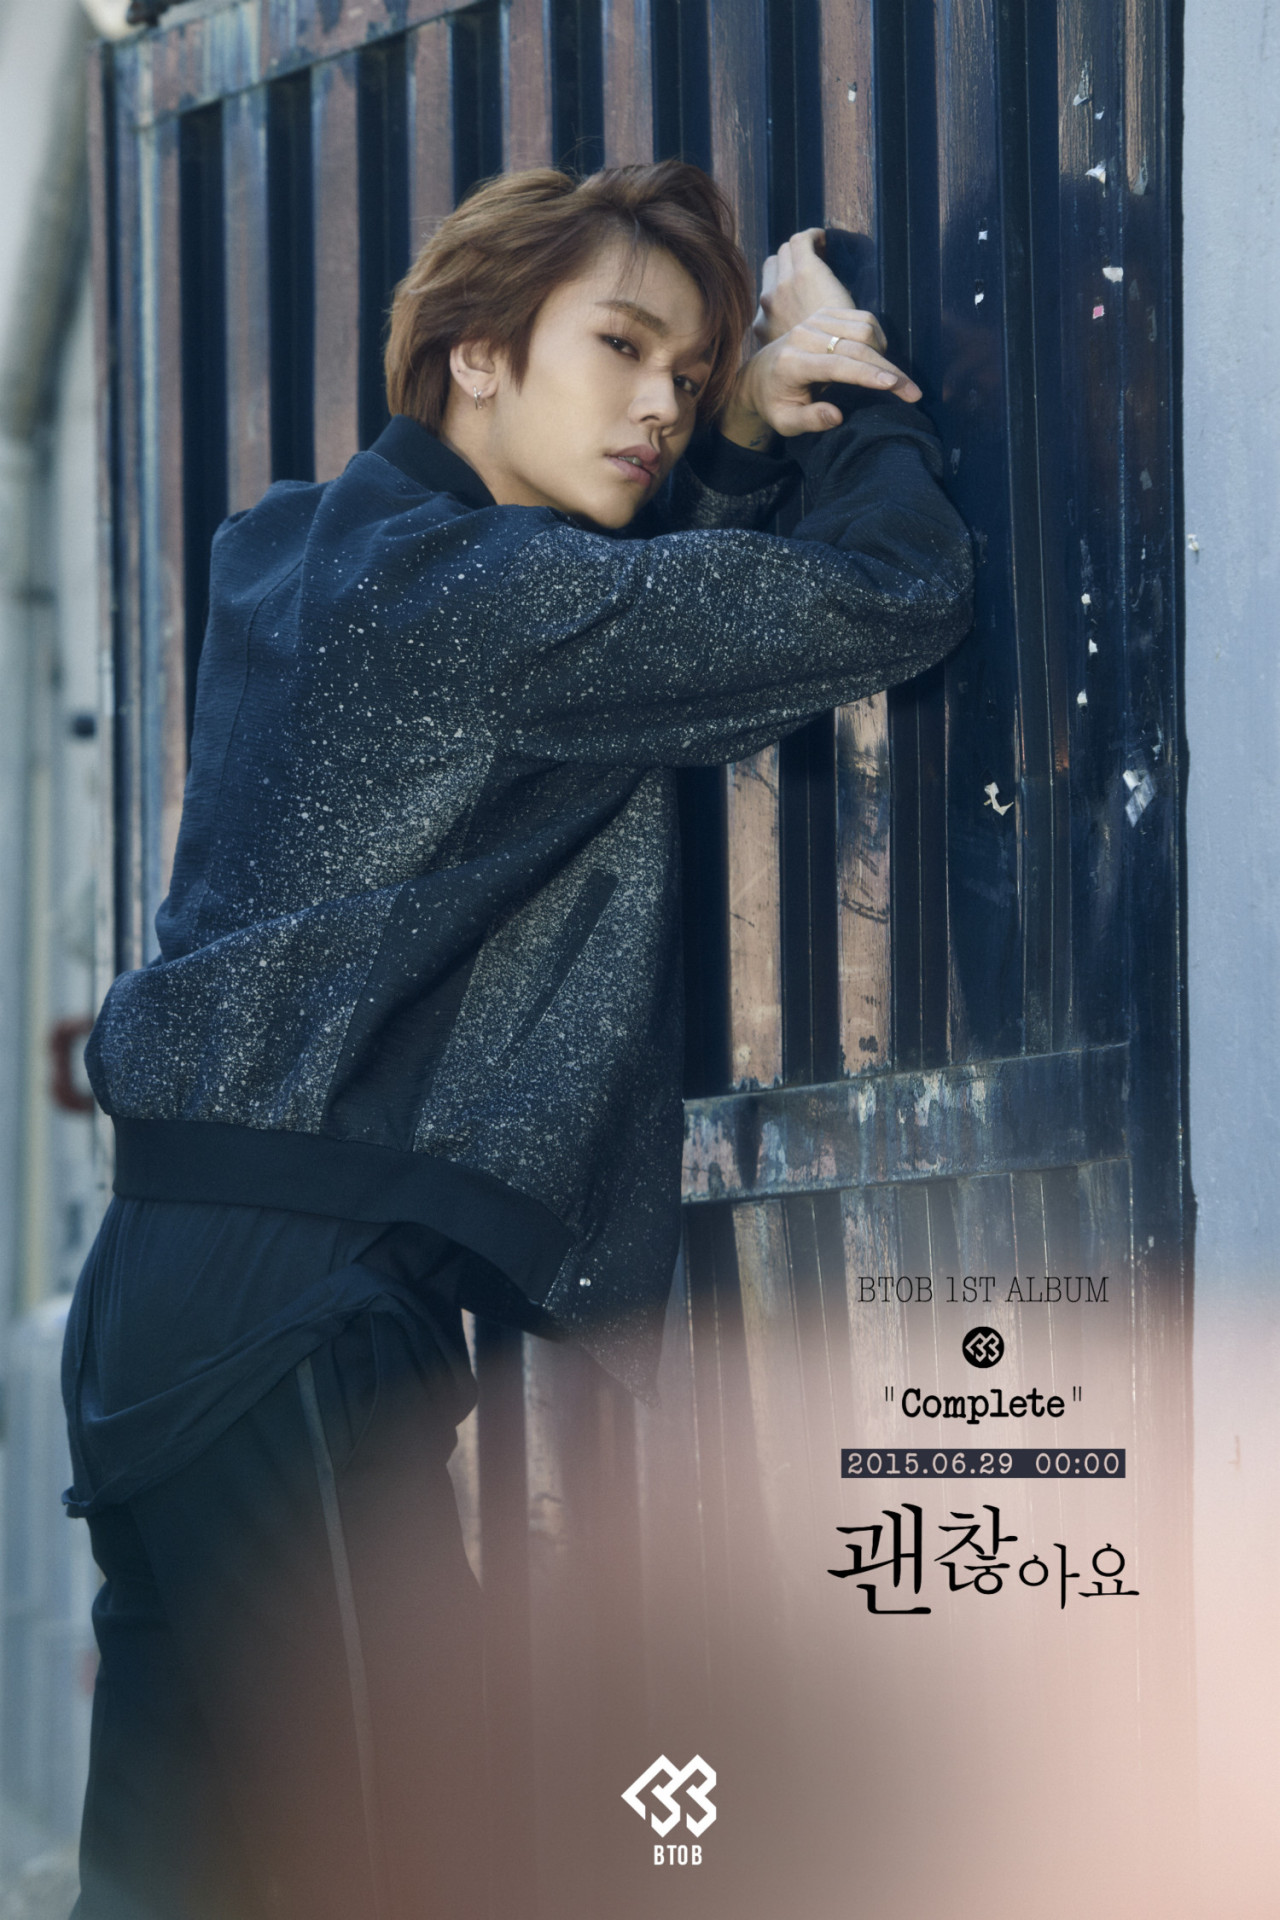 29일(월), BTOB 첫 정규 앨범 'Complete (타이틀곡:괜찮아요)' 발매 예정 | 인스티즈